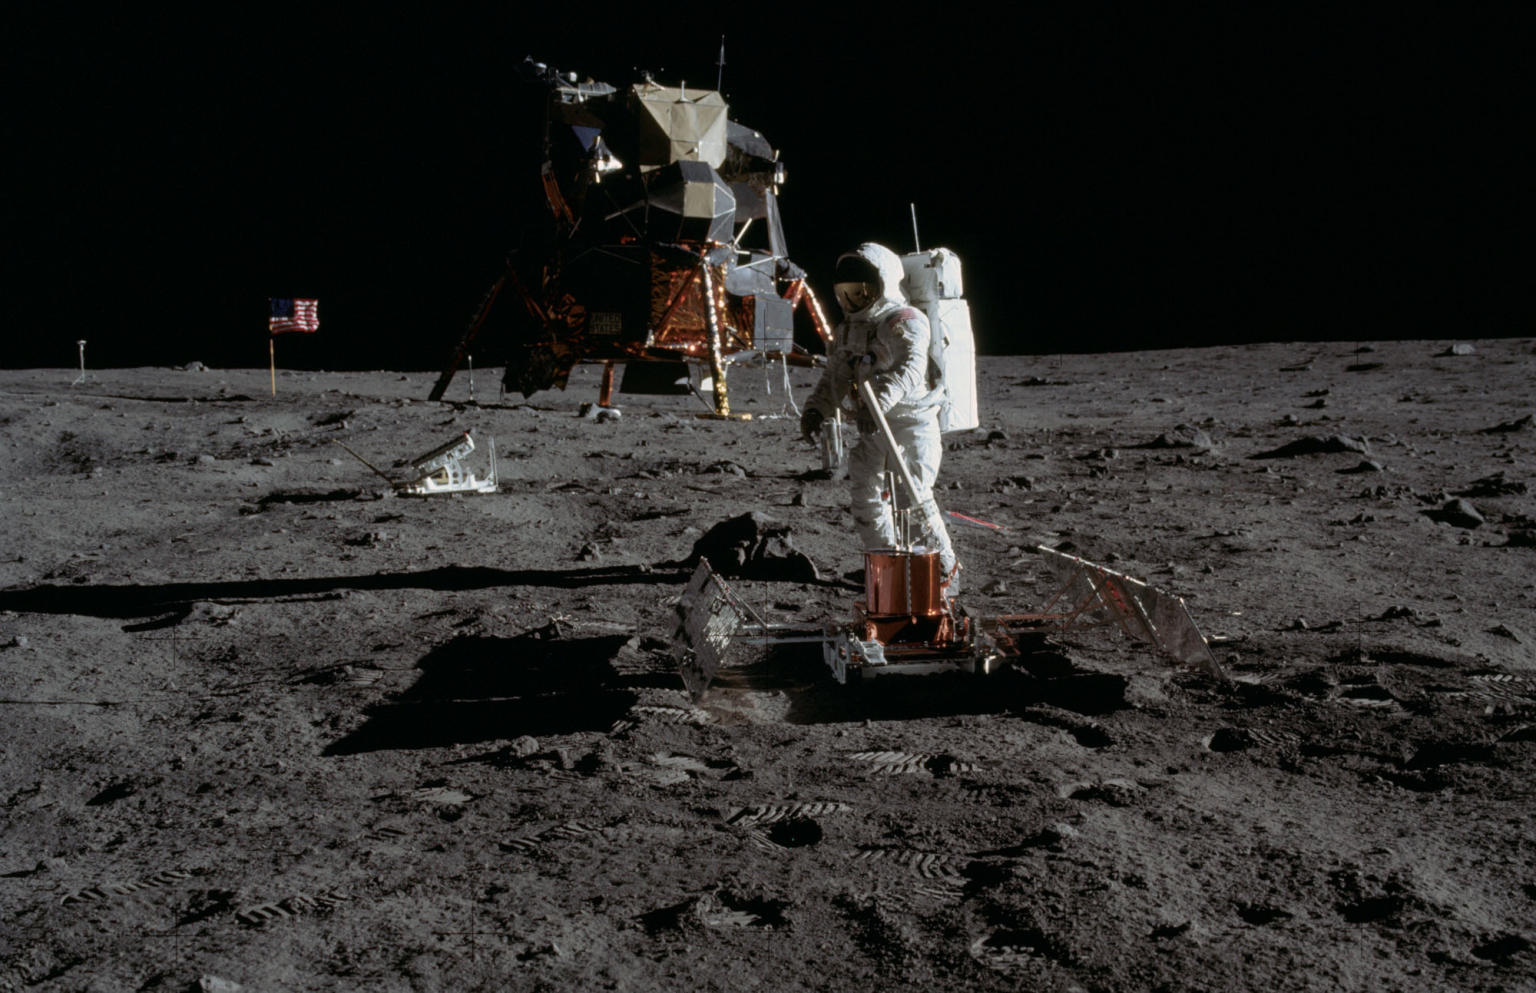 Аполлон 11 1969. Апполо 11 на Луне. Миссия Аполлон 11. Корабль на поверхности луны